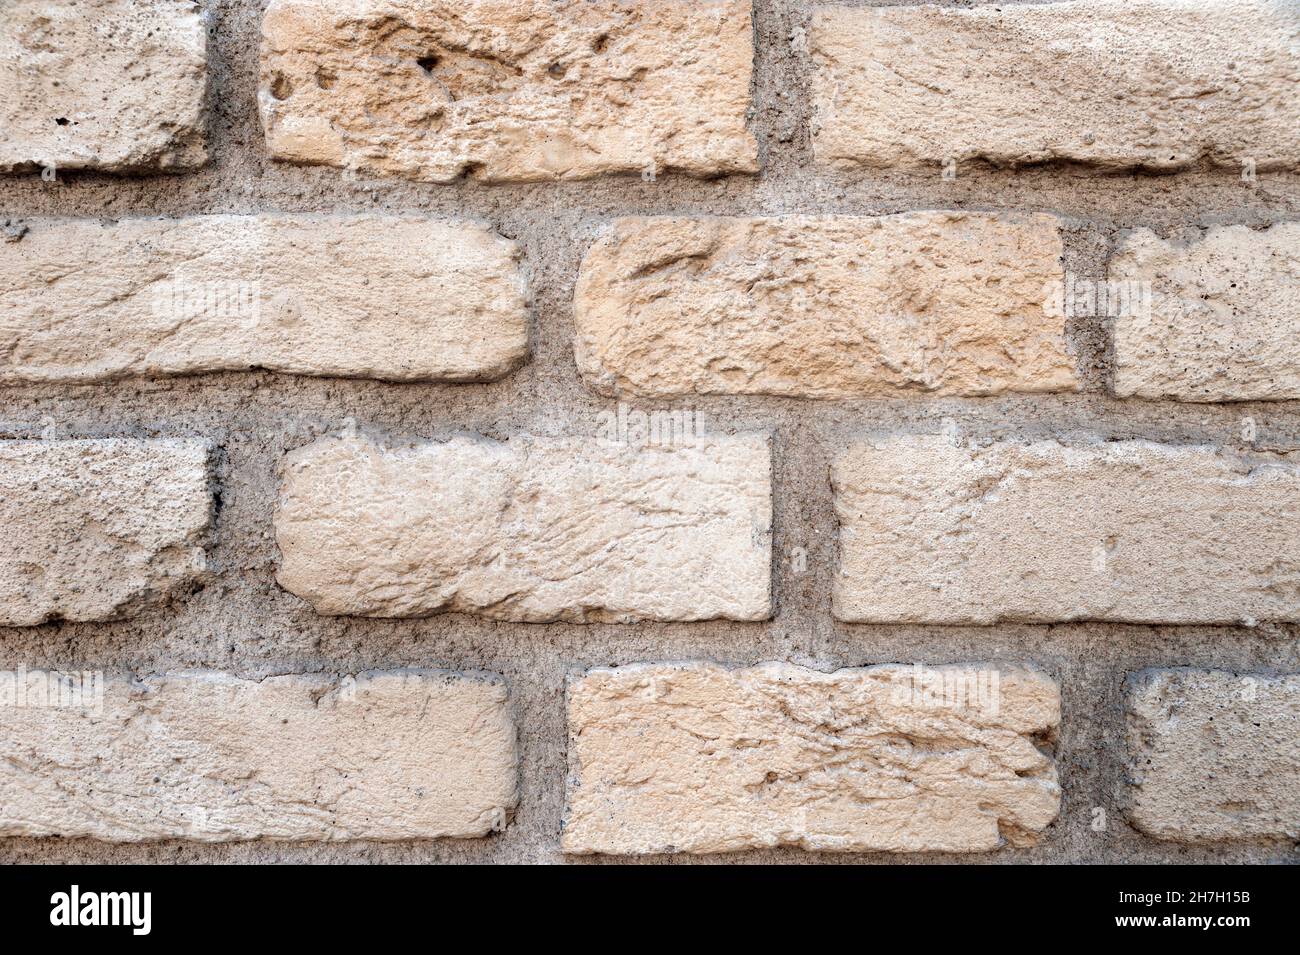 Brick wall.Stone wall. Stock photo Stock Photo